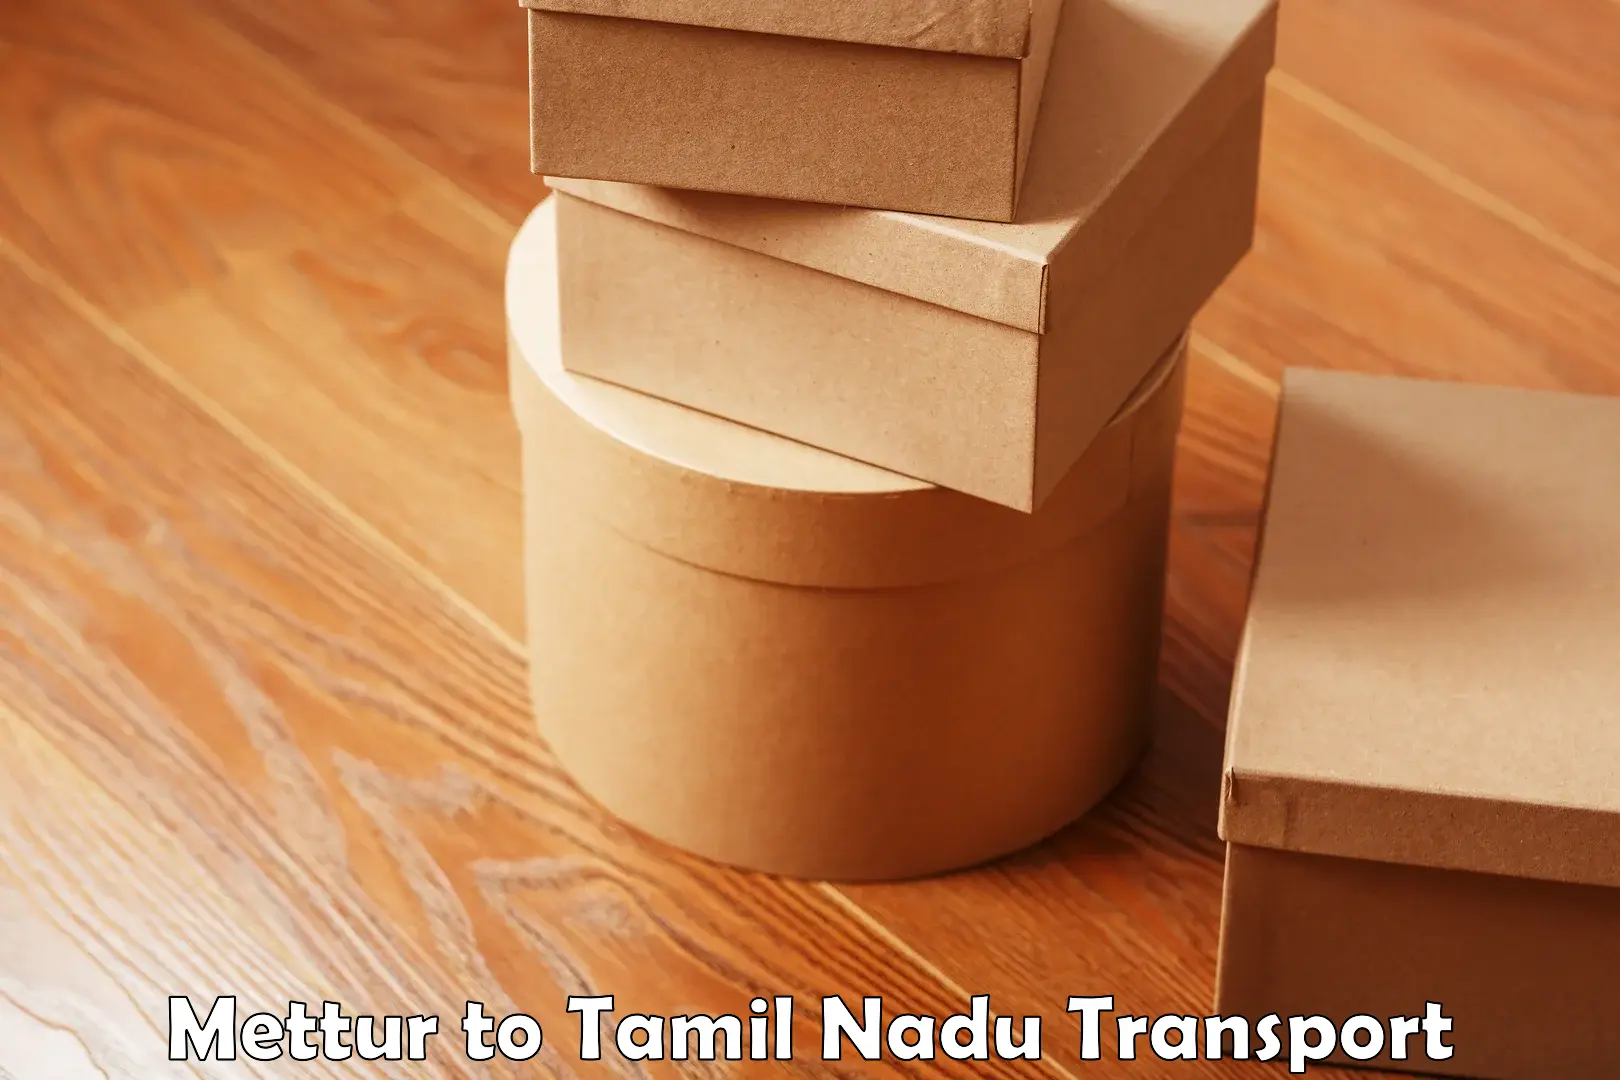 Online transport service Mettur to Namakkal